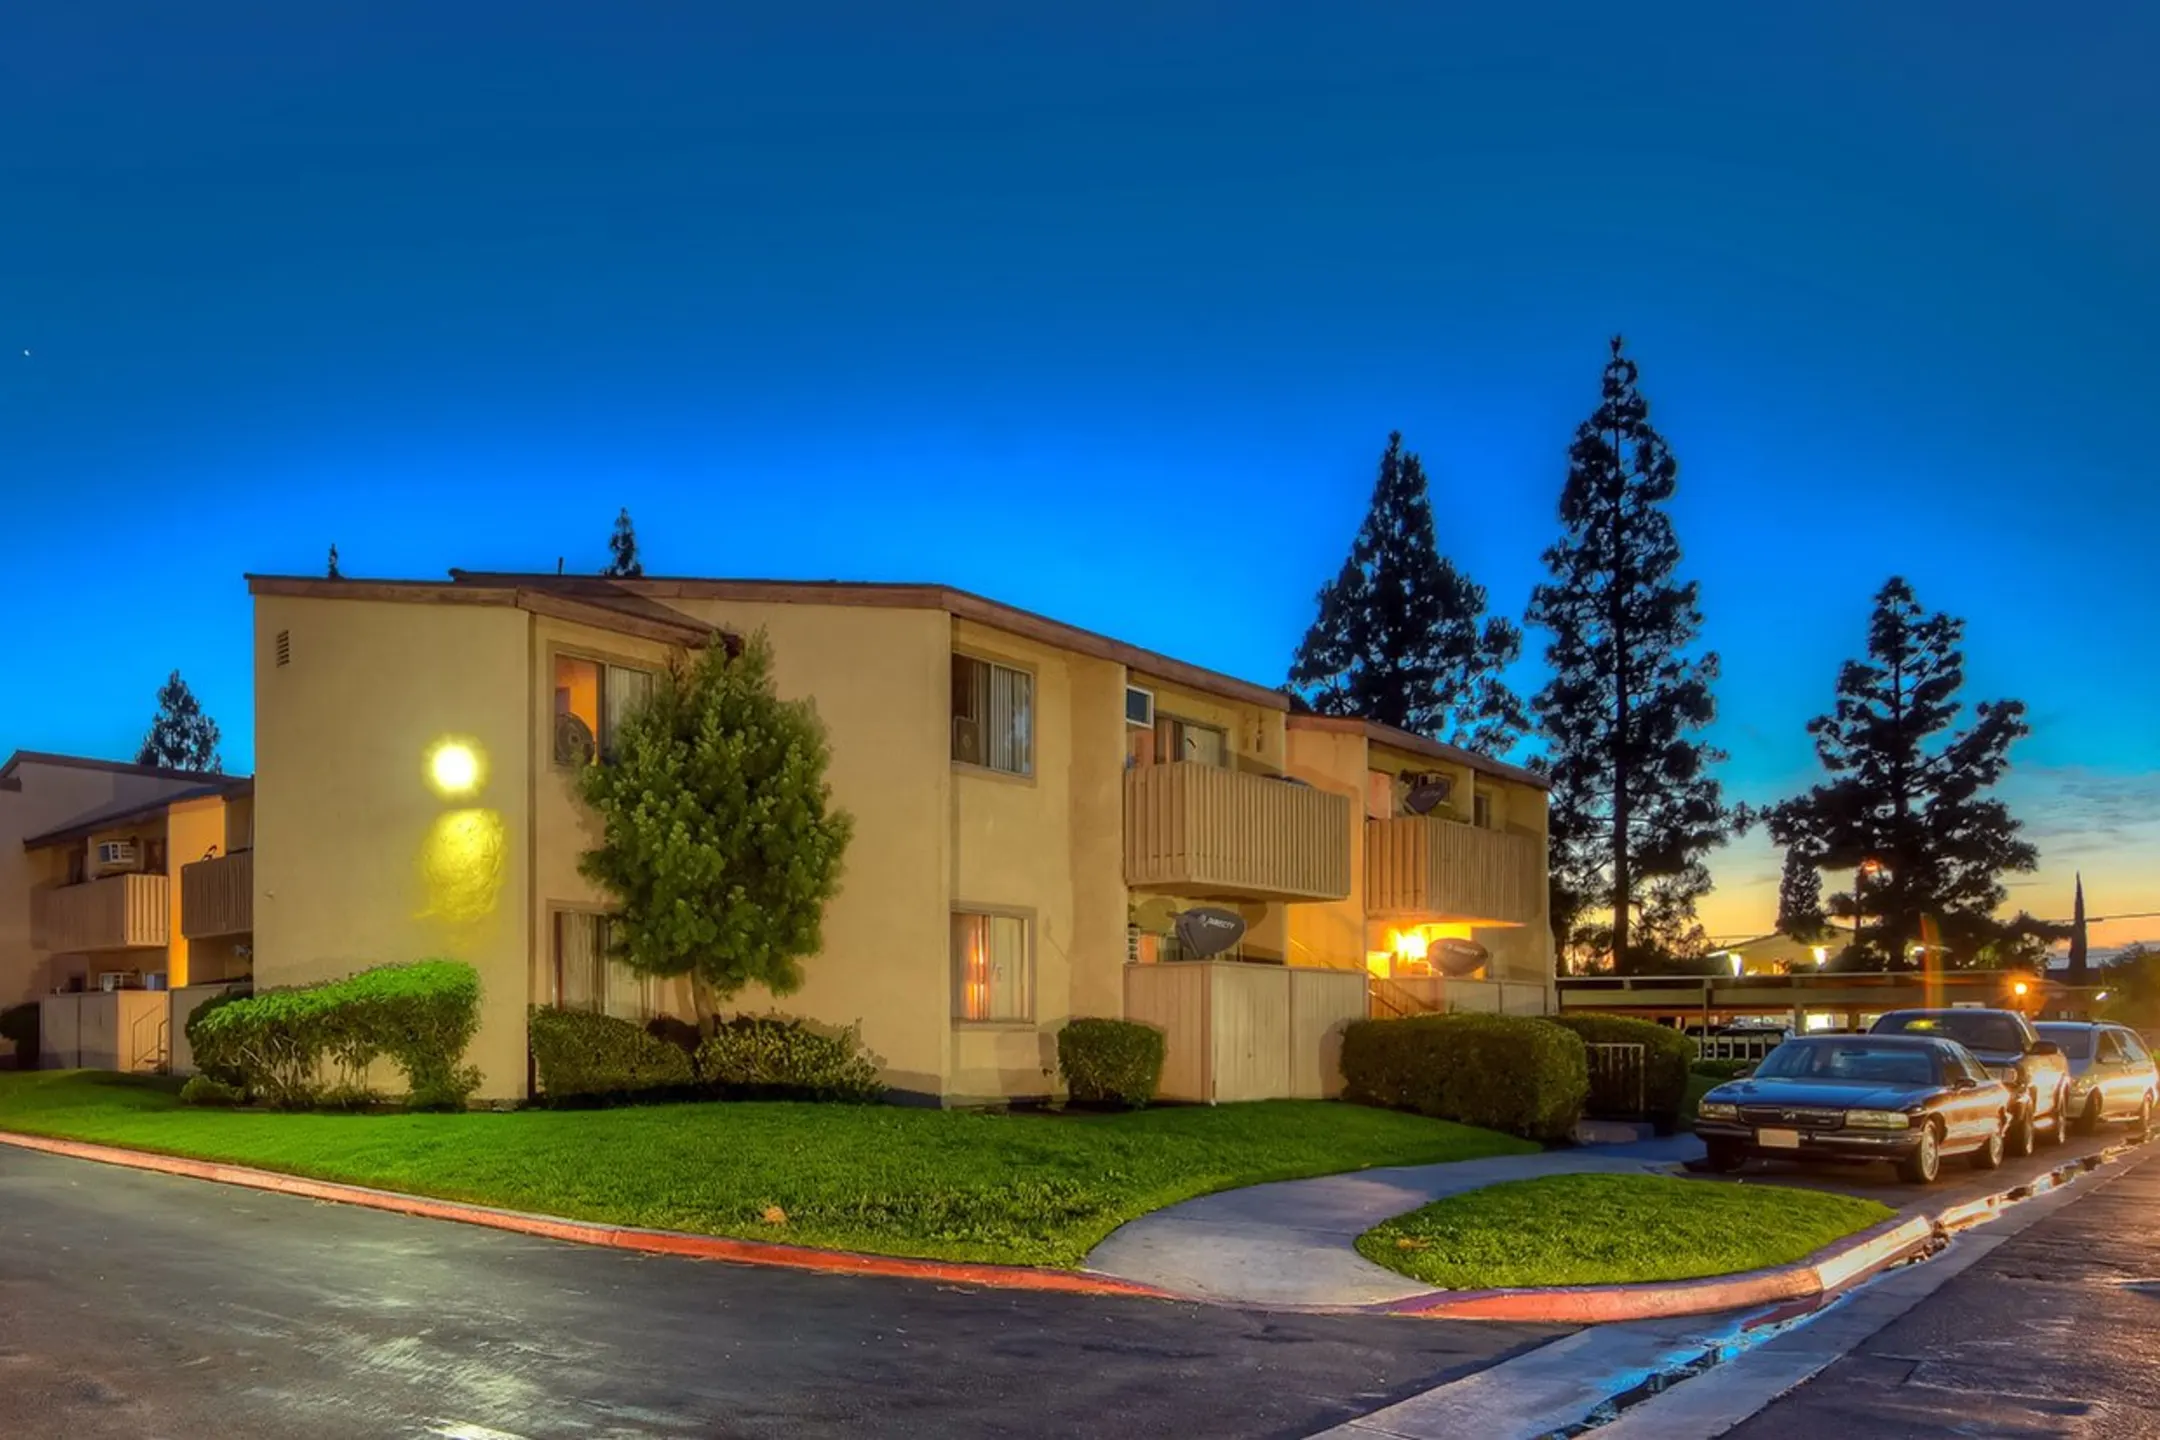 Elevate Apartment Homes - Placentia, CA